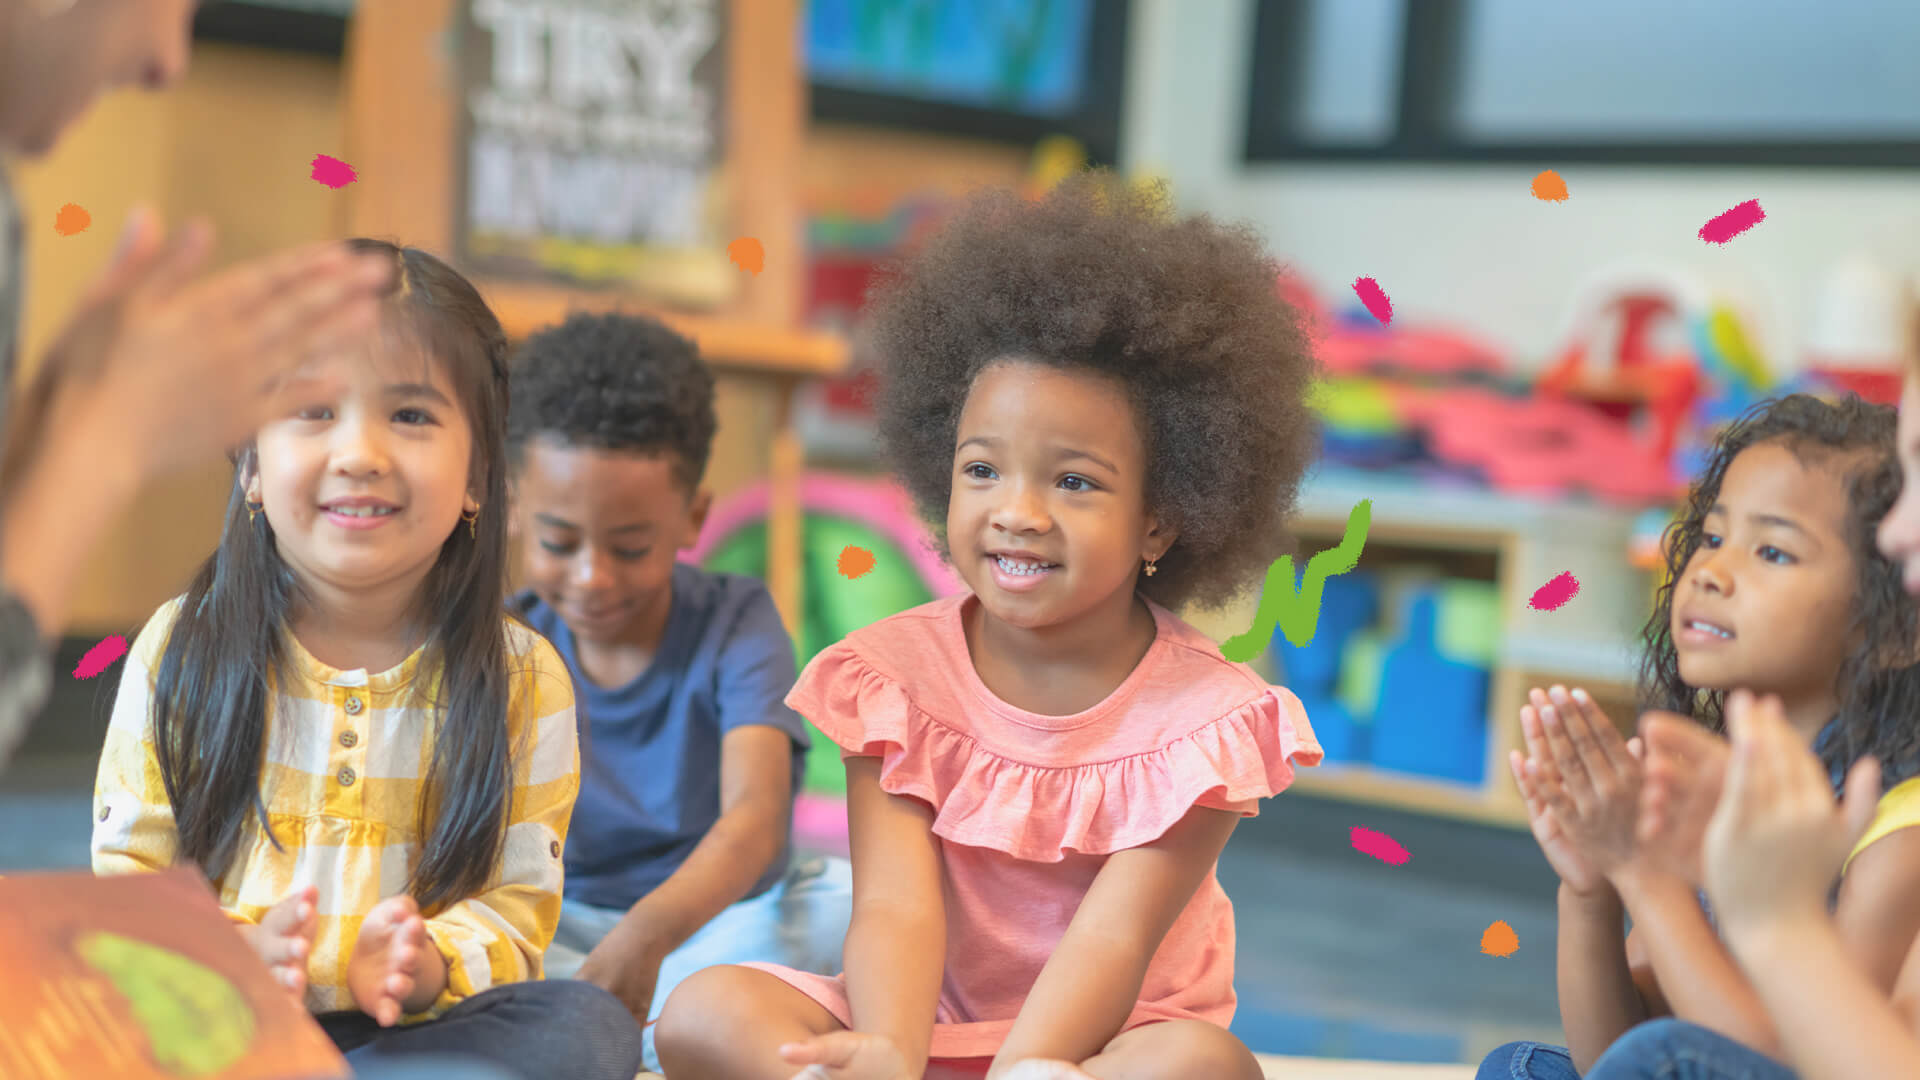 Lei 10,639: na imagem, um grupo multiétnico de crianças brinca em uma sala de aula colorida.